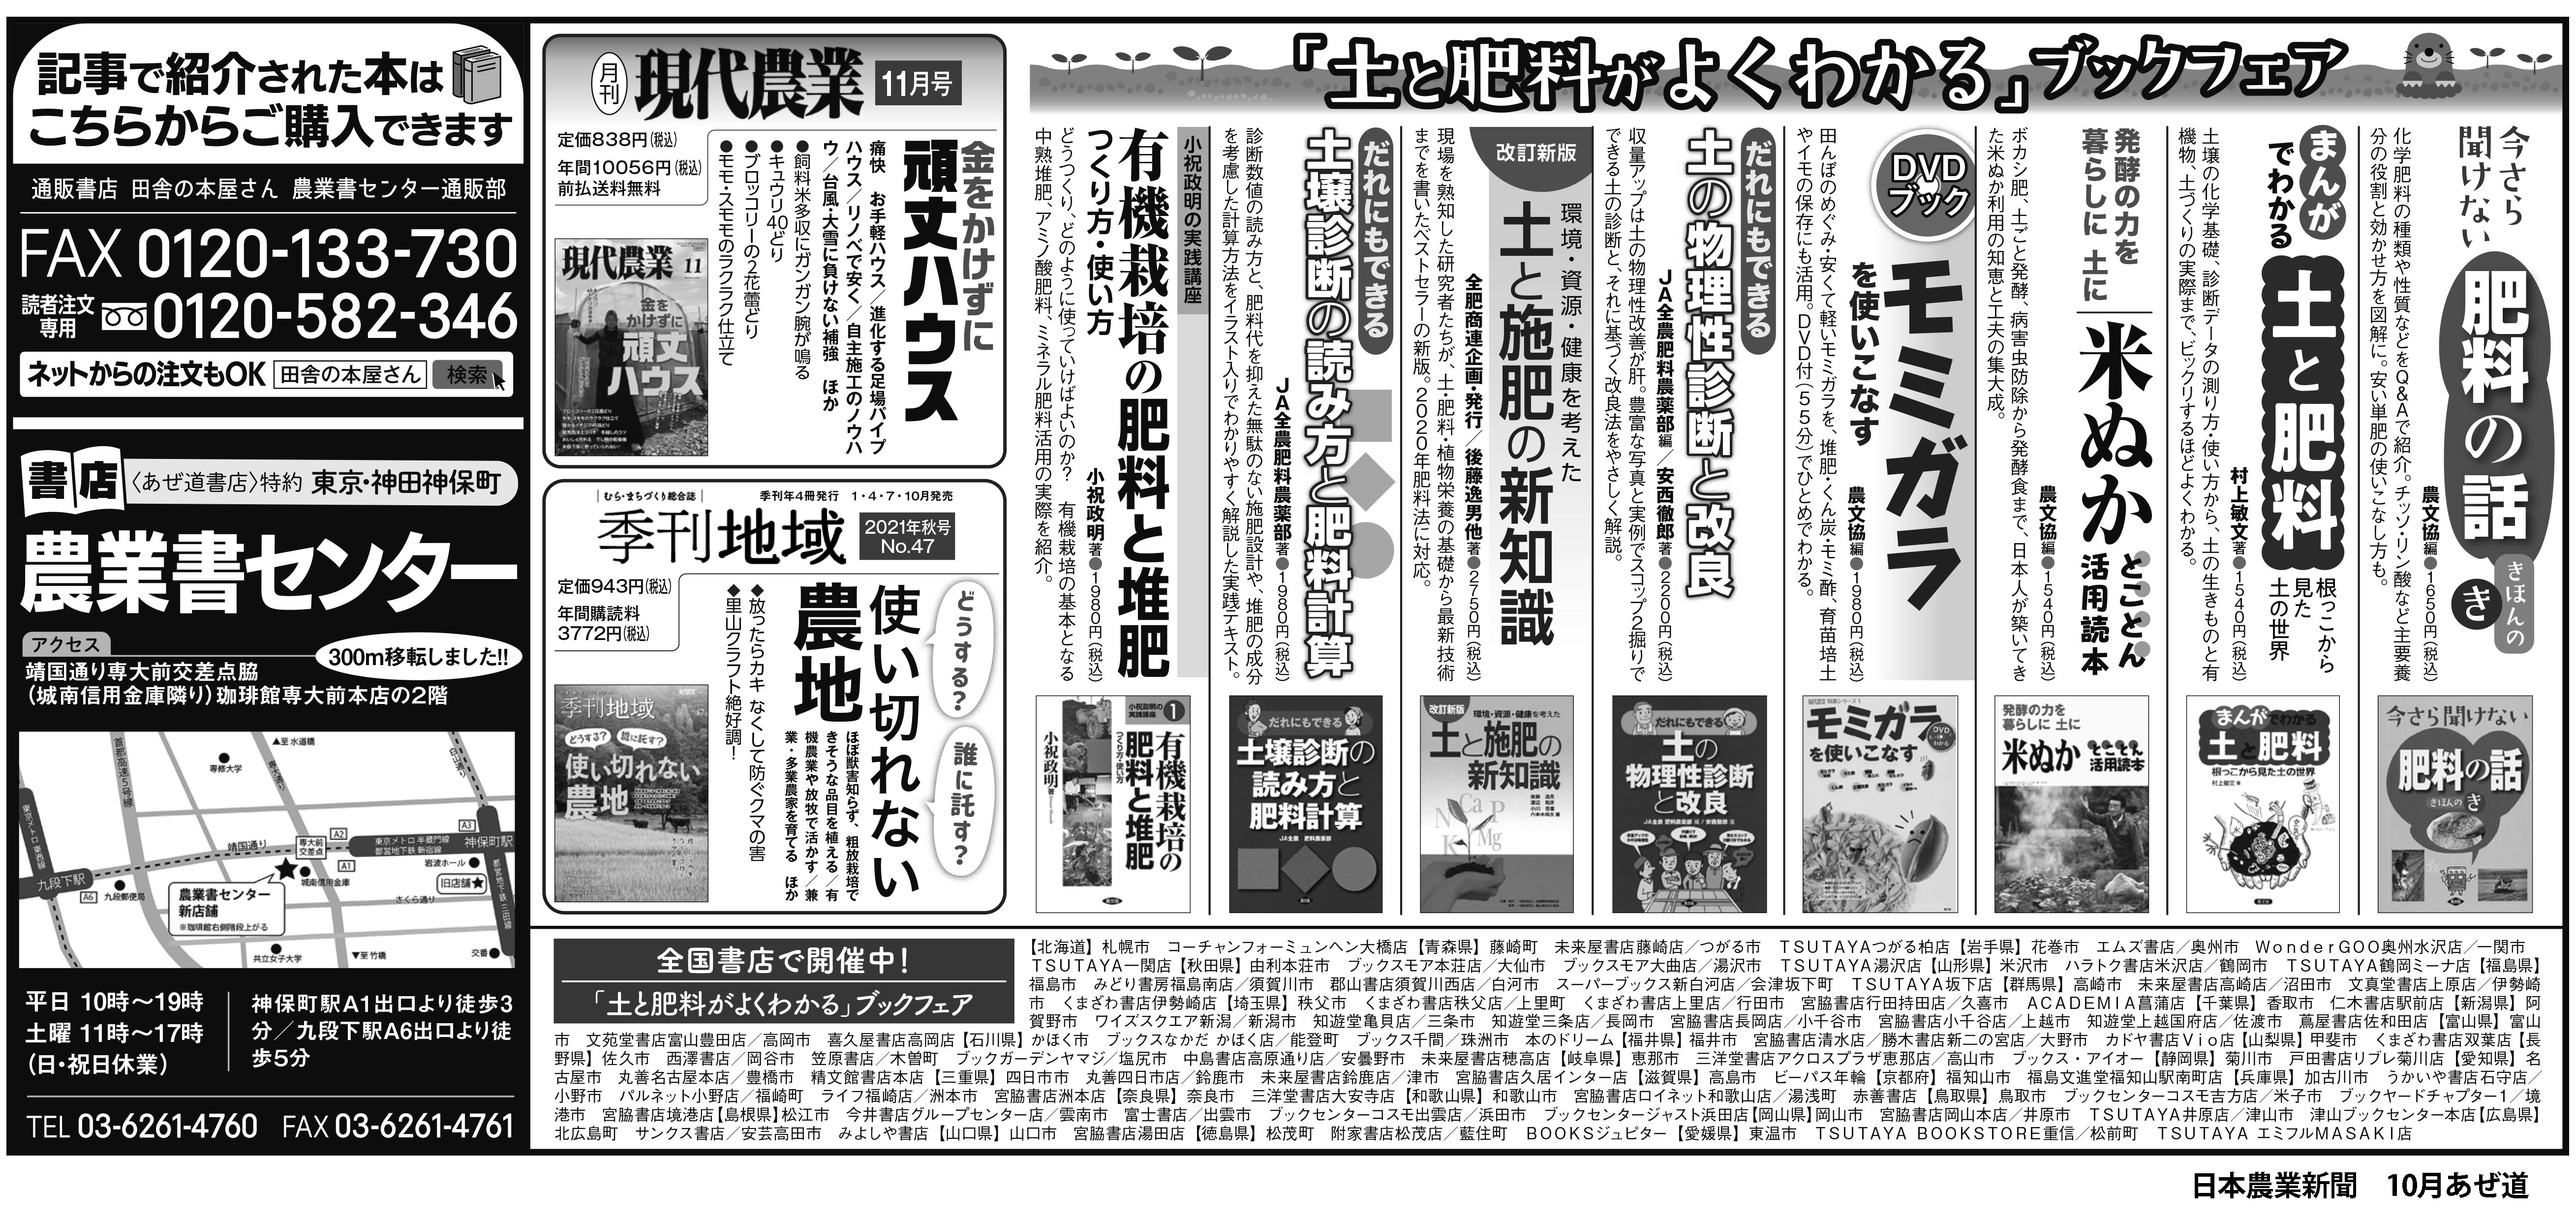 日本農業新聞10月毎日曜 あぜ道書店（書評欄）下広告 – 農文協からのお知らせ